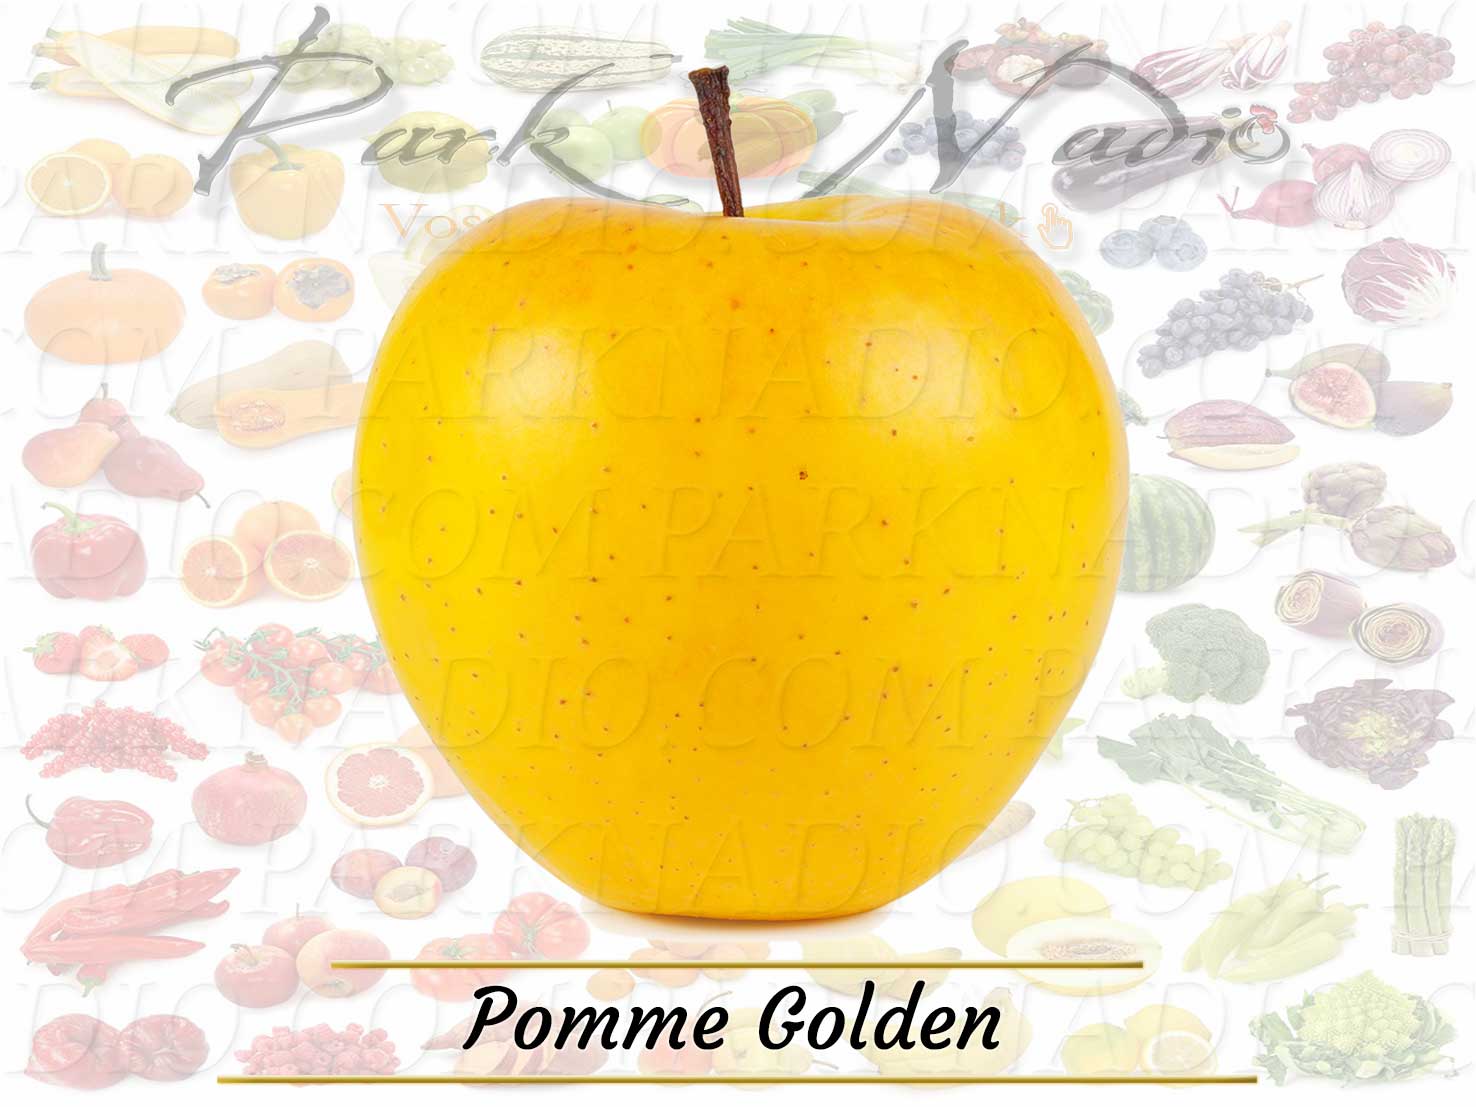 Pomme Golden